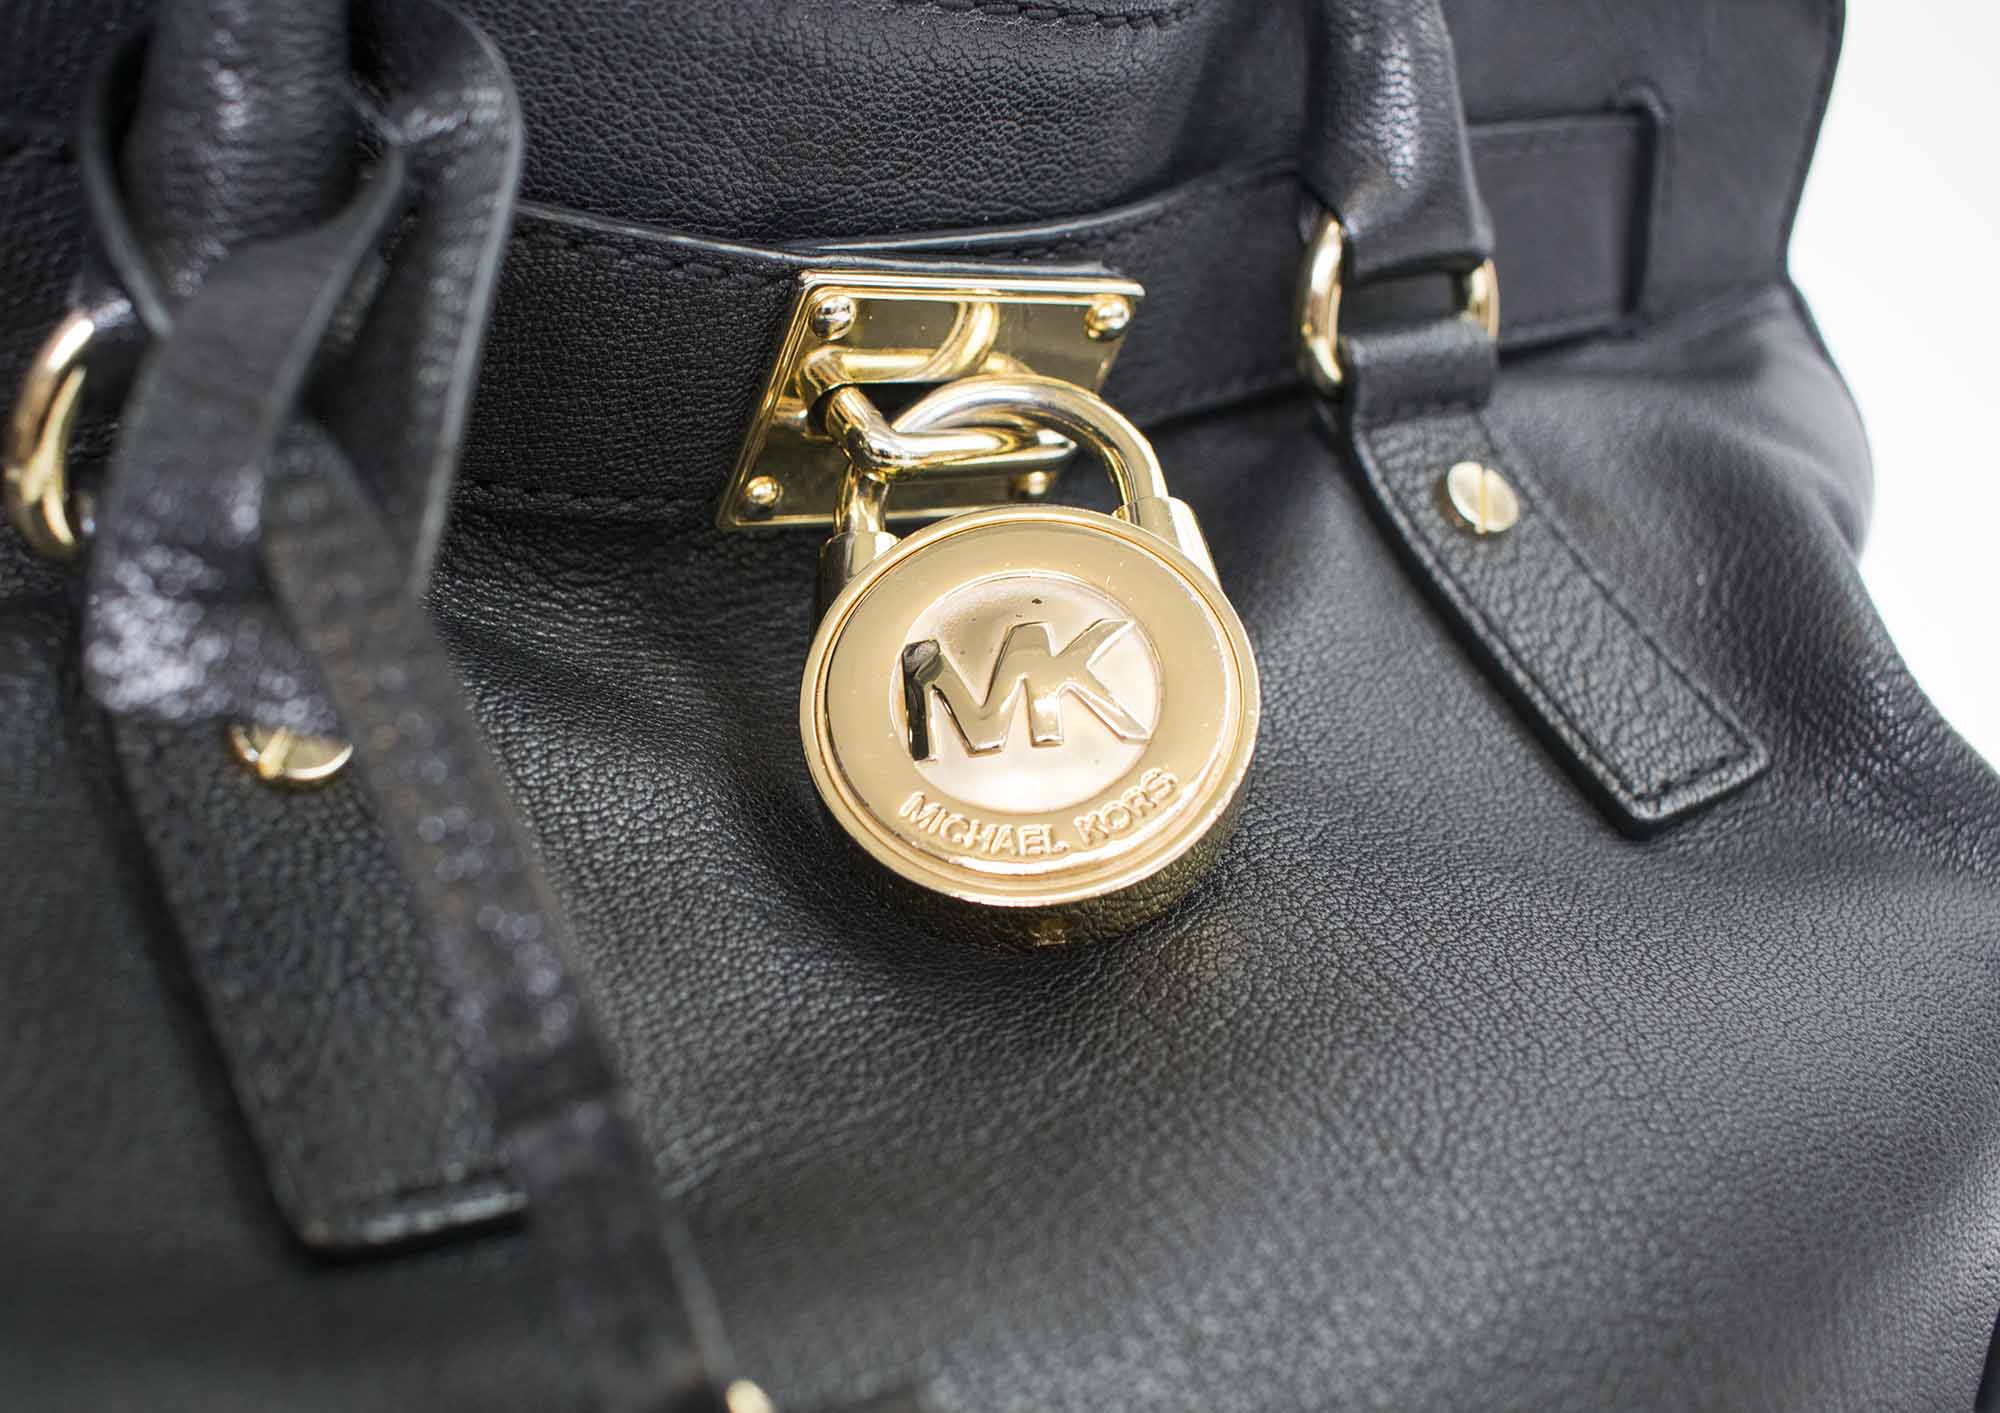 michael kors bag with lock and key